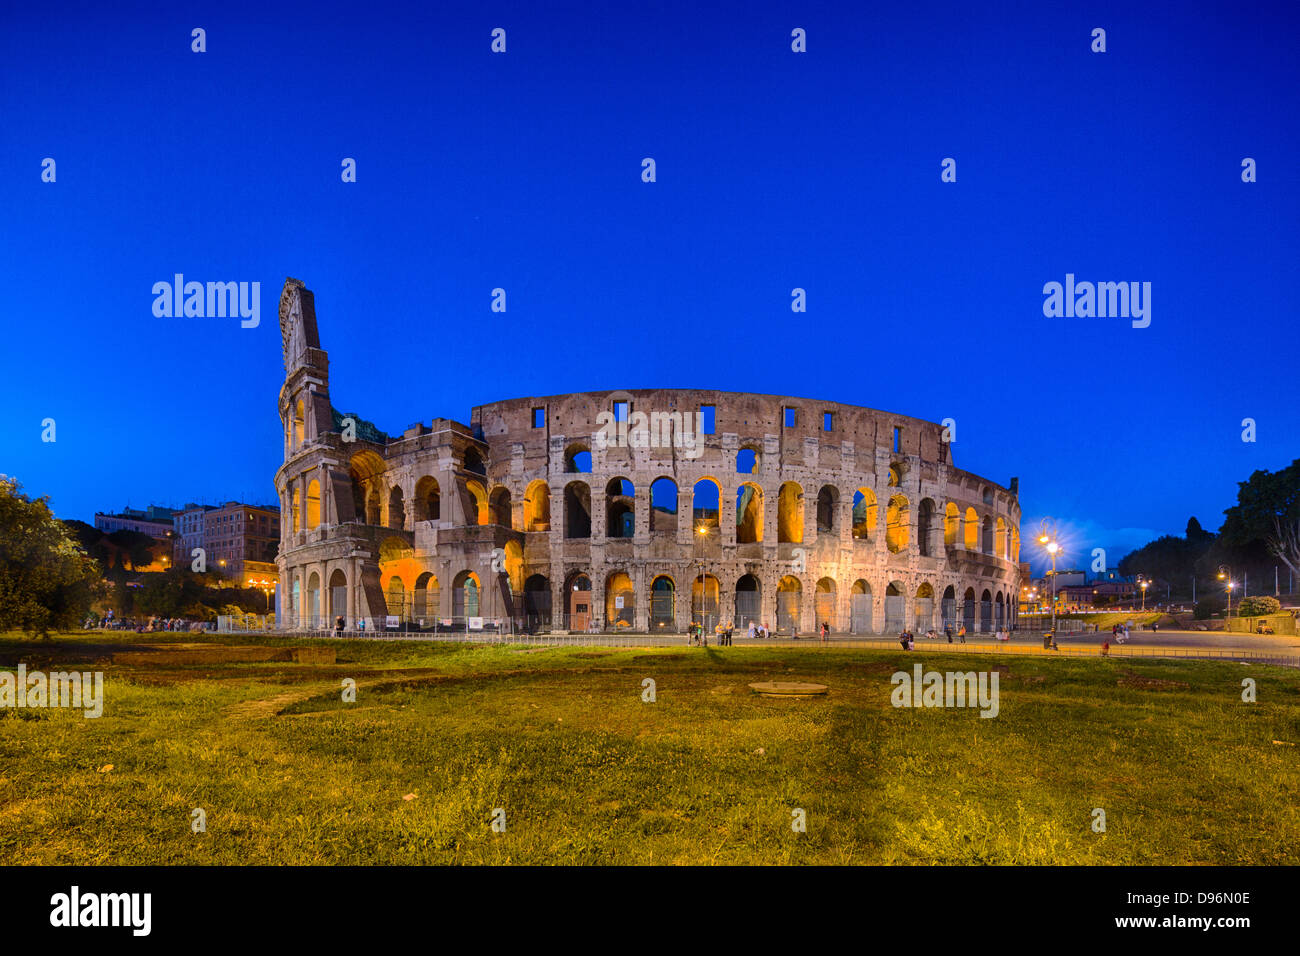 Fassade des Kolosseums oder Kolosseum bei Nacht, Rom, Italien Stockfoto